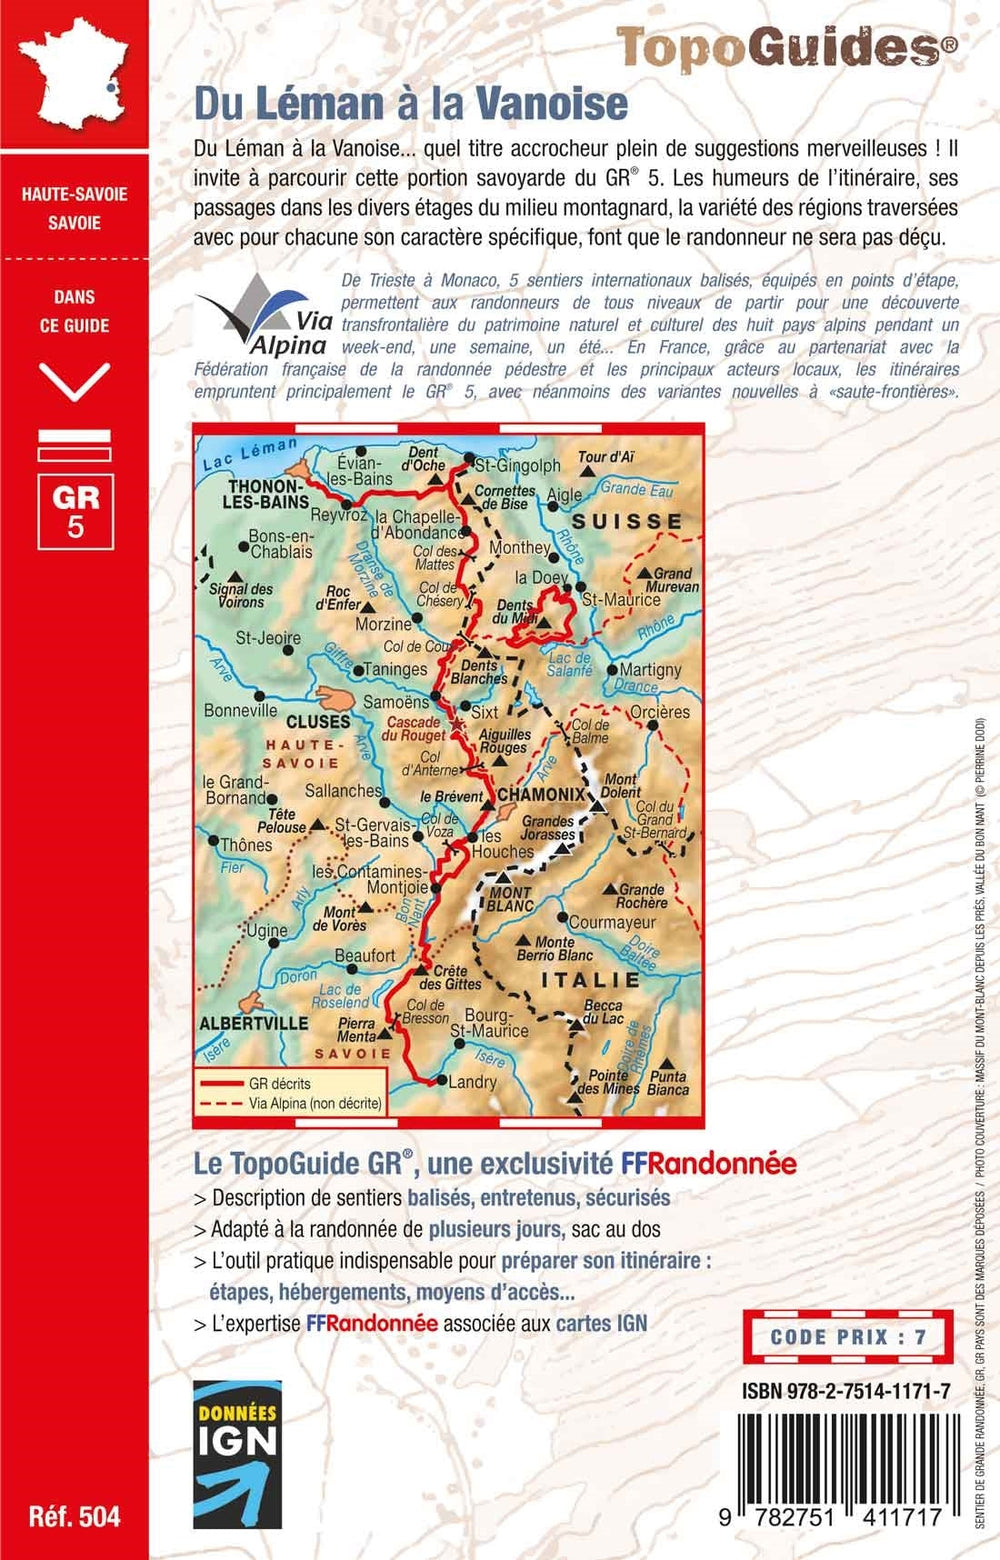 Topoguide de randonnée - Du Léman à la Vanoise par le Mont Blanc et le Beaufortain - GR5 | FFR guide de randonnée FFR - Fédération Française de Randonnée 